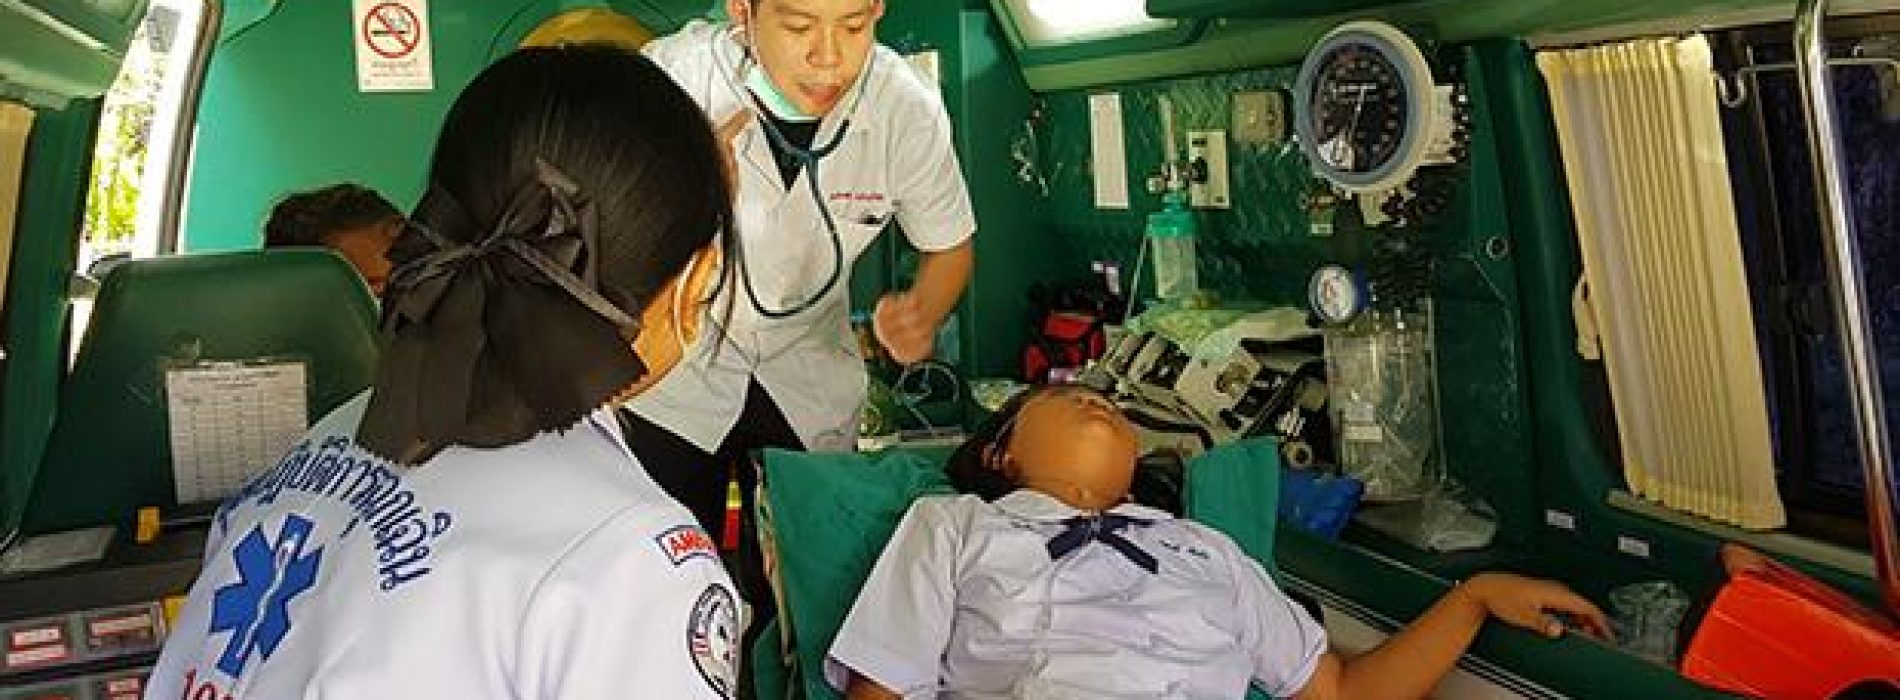 Thaise schoolmeisjes belanden in ziekenhuis na HPV-vaccin. Wanneer komt er een einde aan deze waanzin?